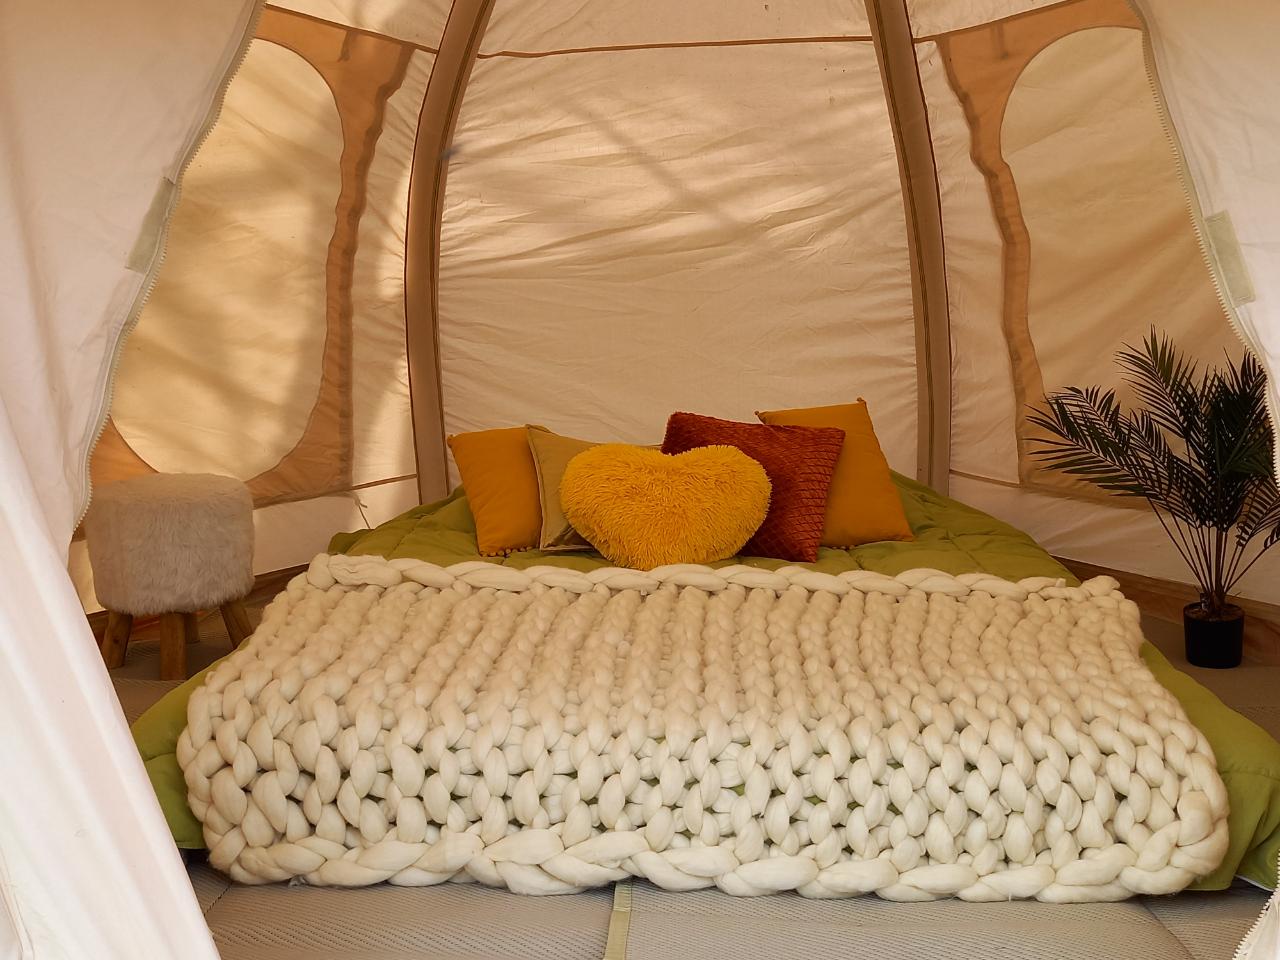 Logement GreenGo: Bus soleil avec une tente dans les arbres et une tente cocoon - Image 9